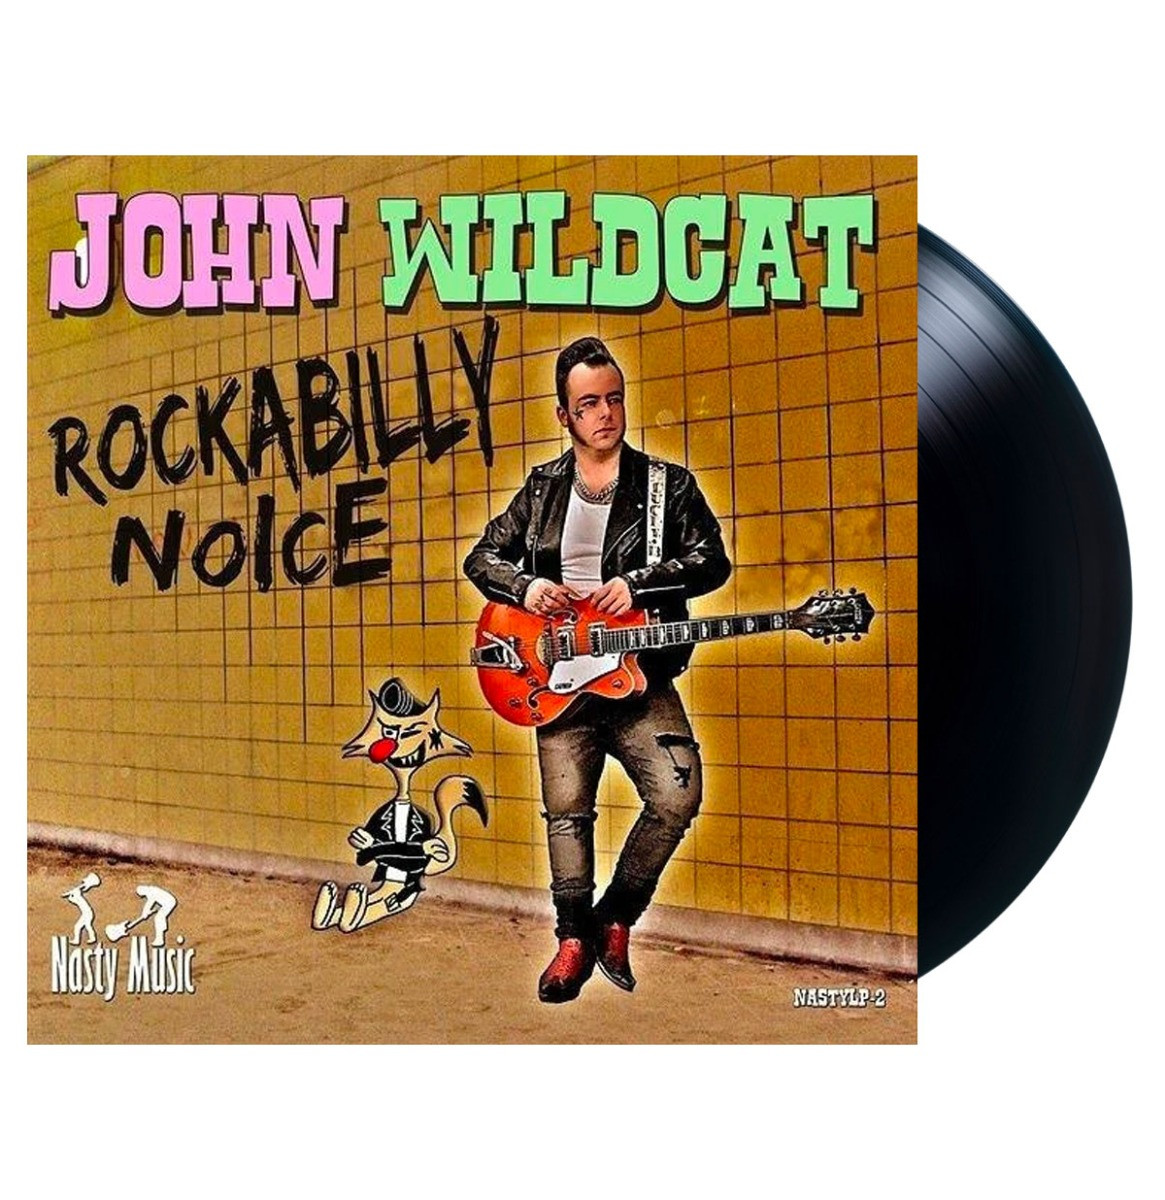 John Wildcat - Rockabilly Noice LP